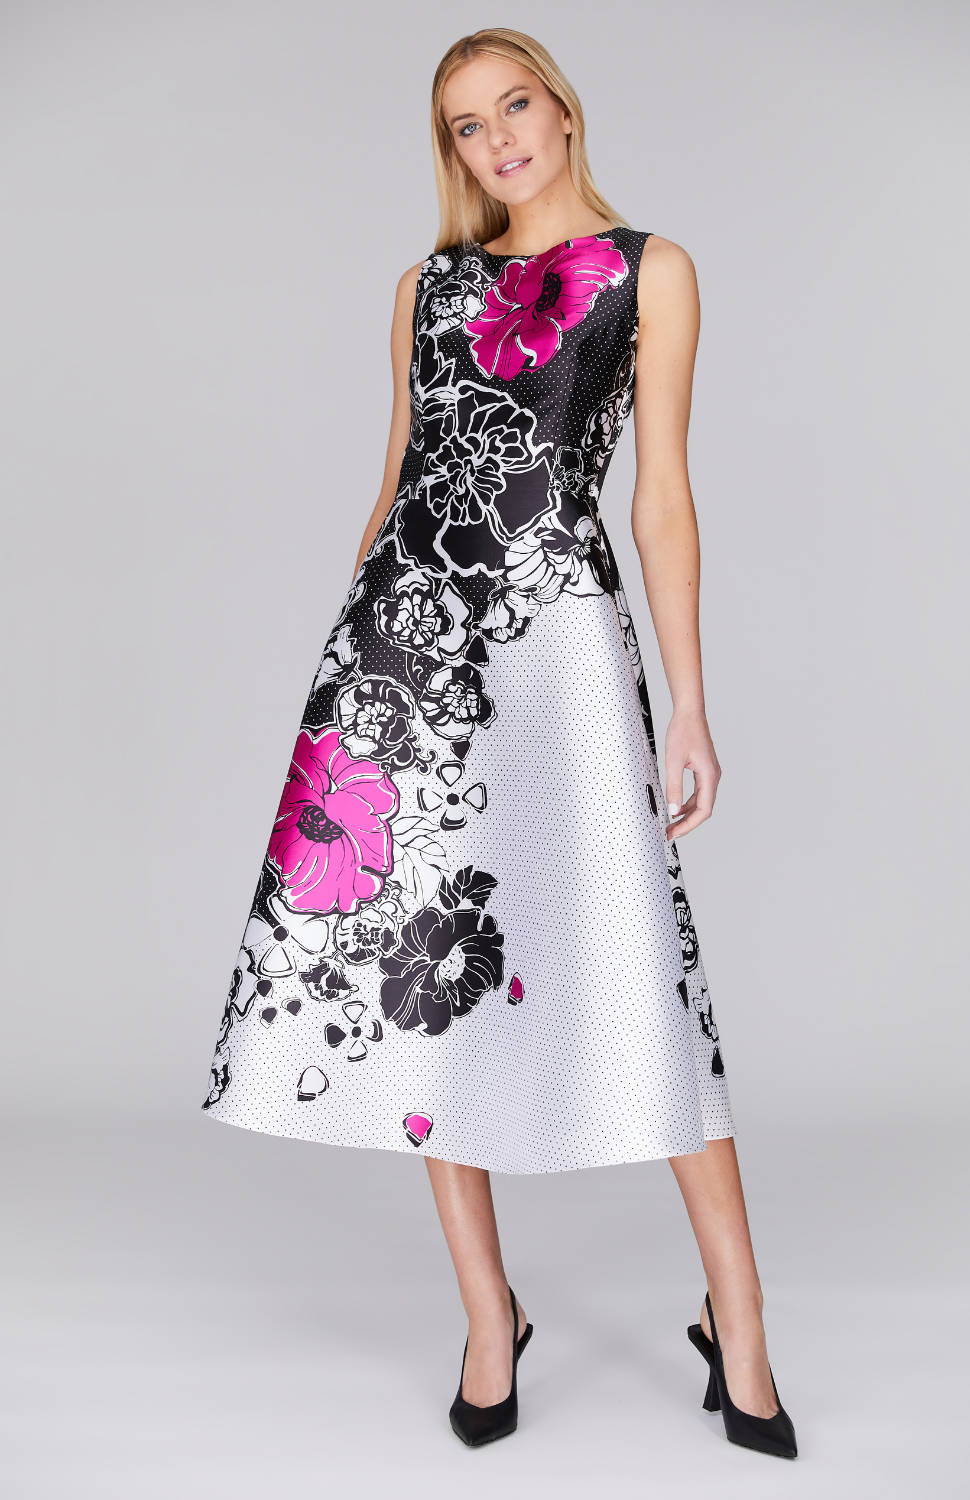 Floral Polka Dot Fit & Flare Dress